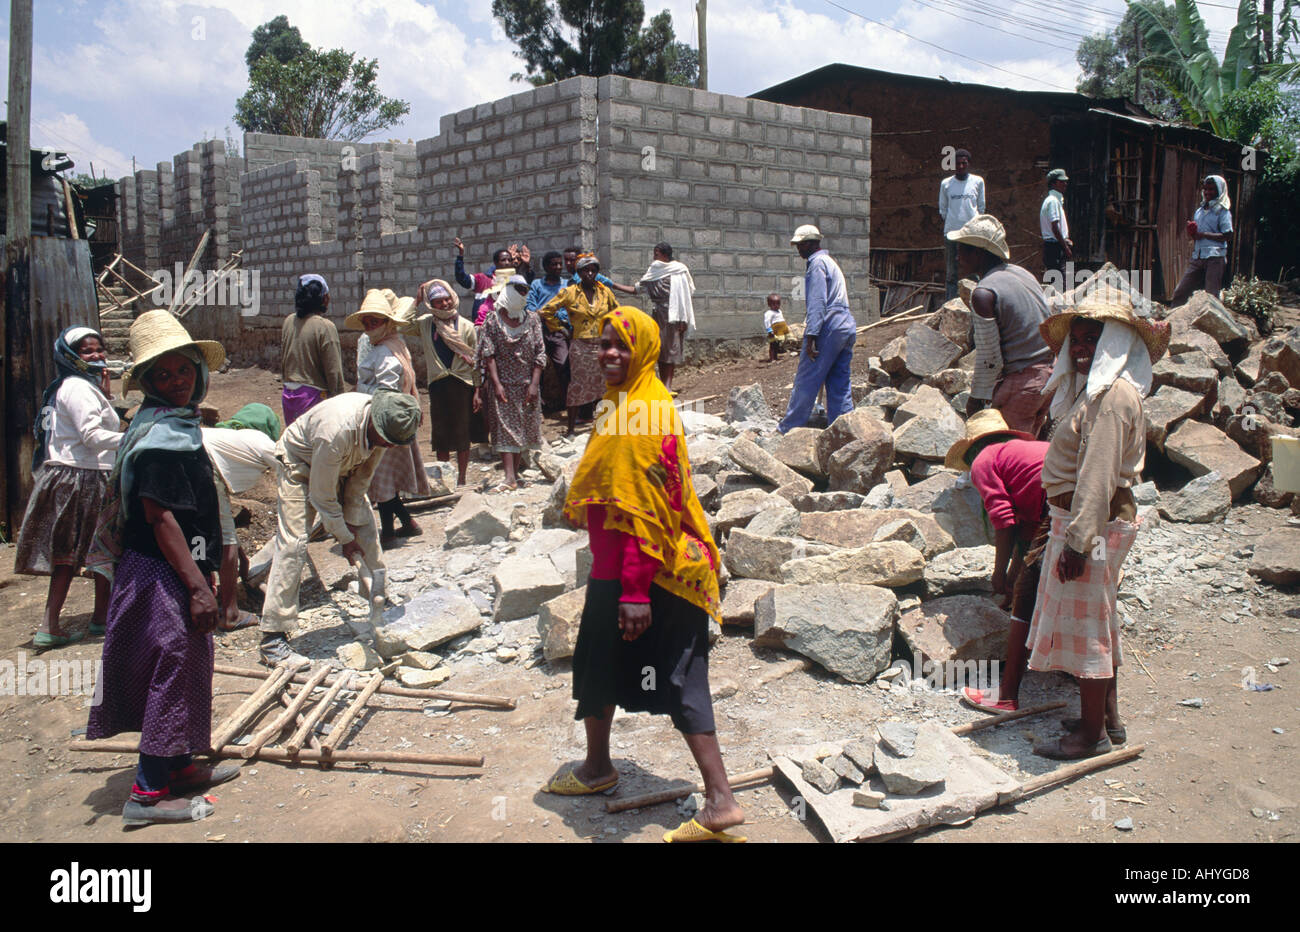 Uomini e donne della comunità locale costruendo nuove case a prezzi accessibili nelle baraccopoli della città. Addis Abeba. Etiopia Foto Stock